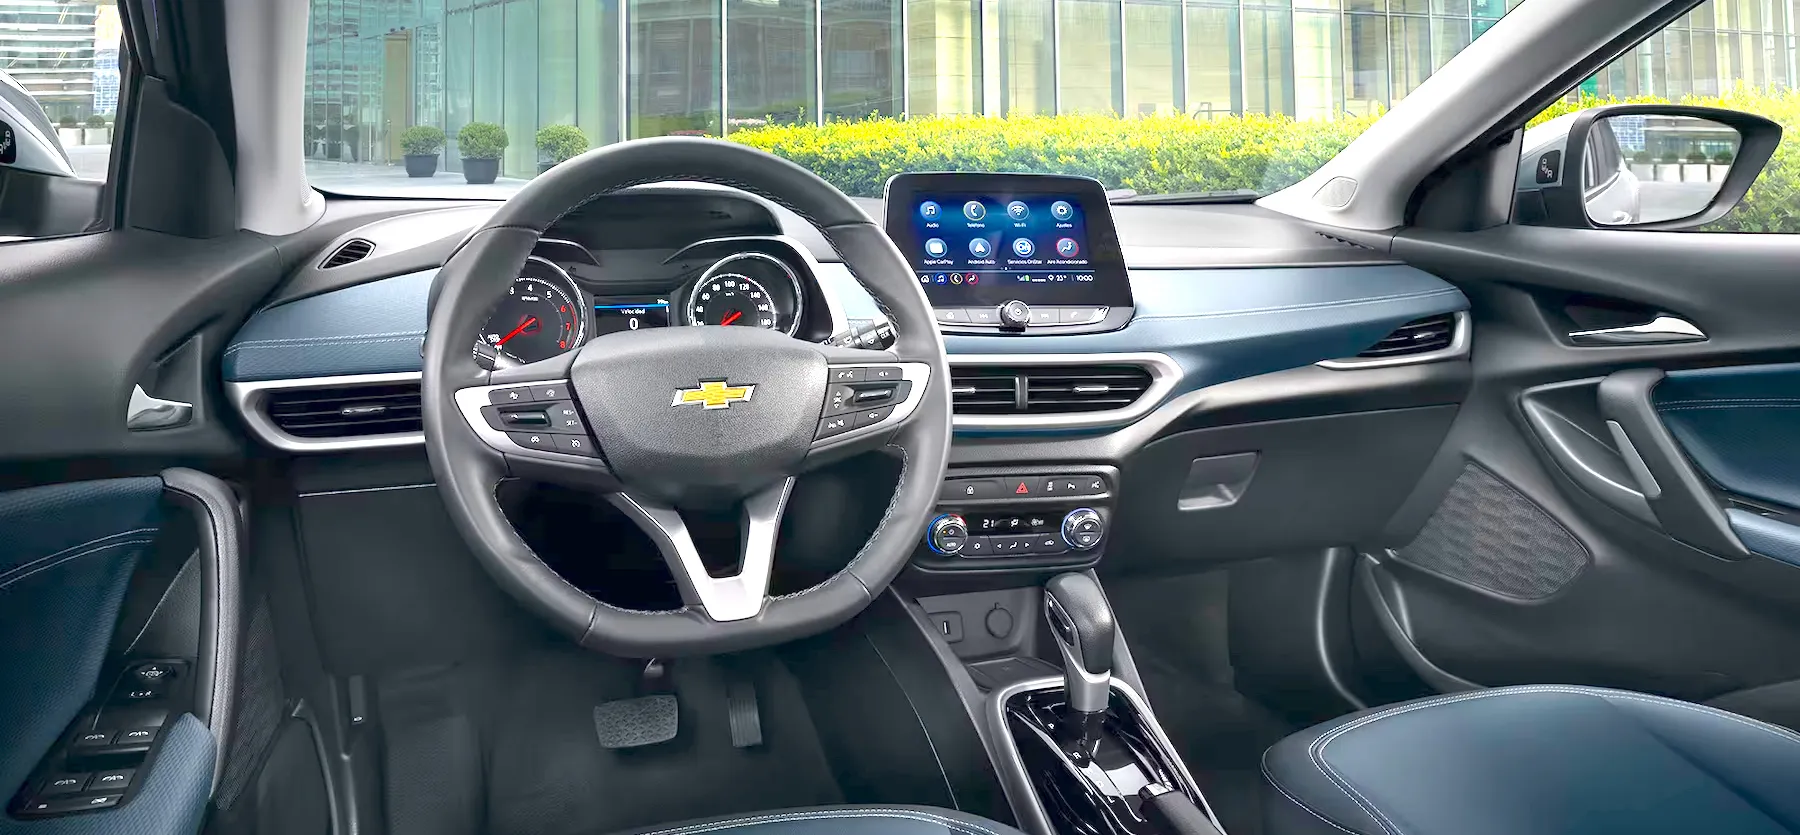 Chevrolet Tracker interior